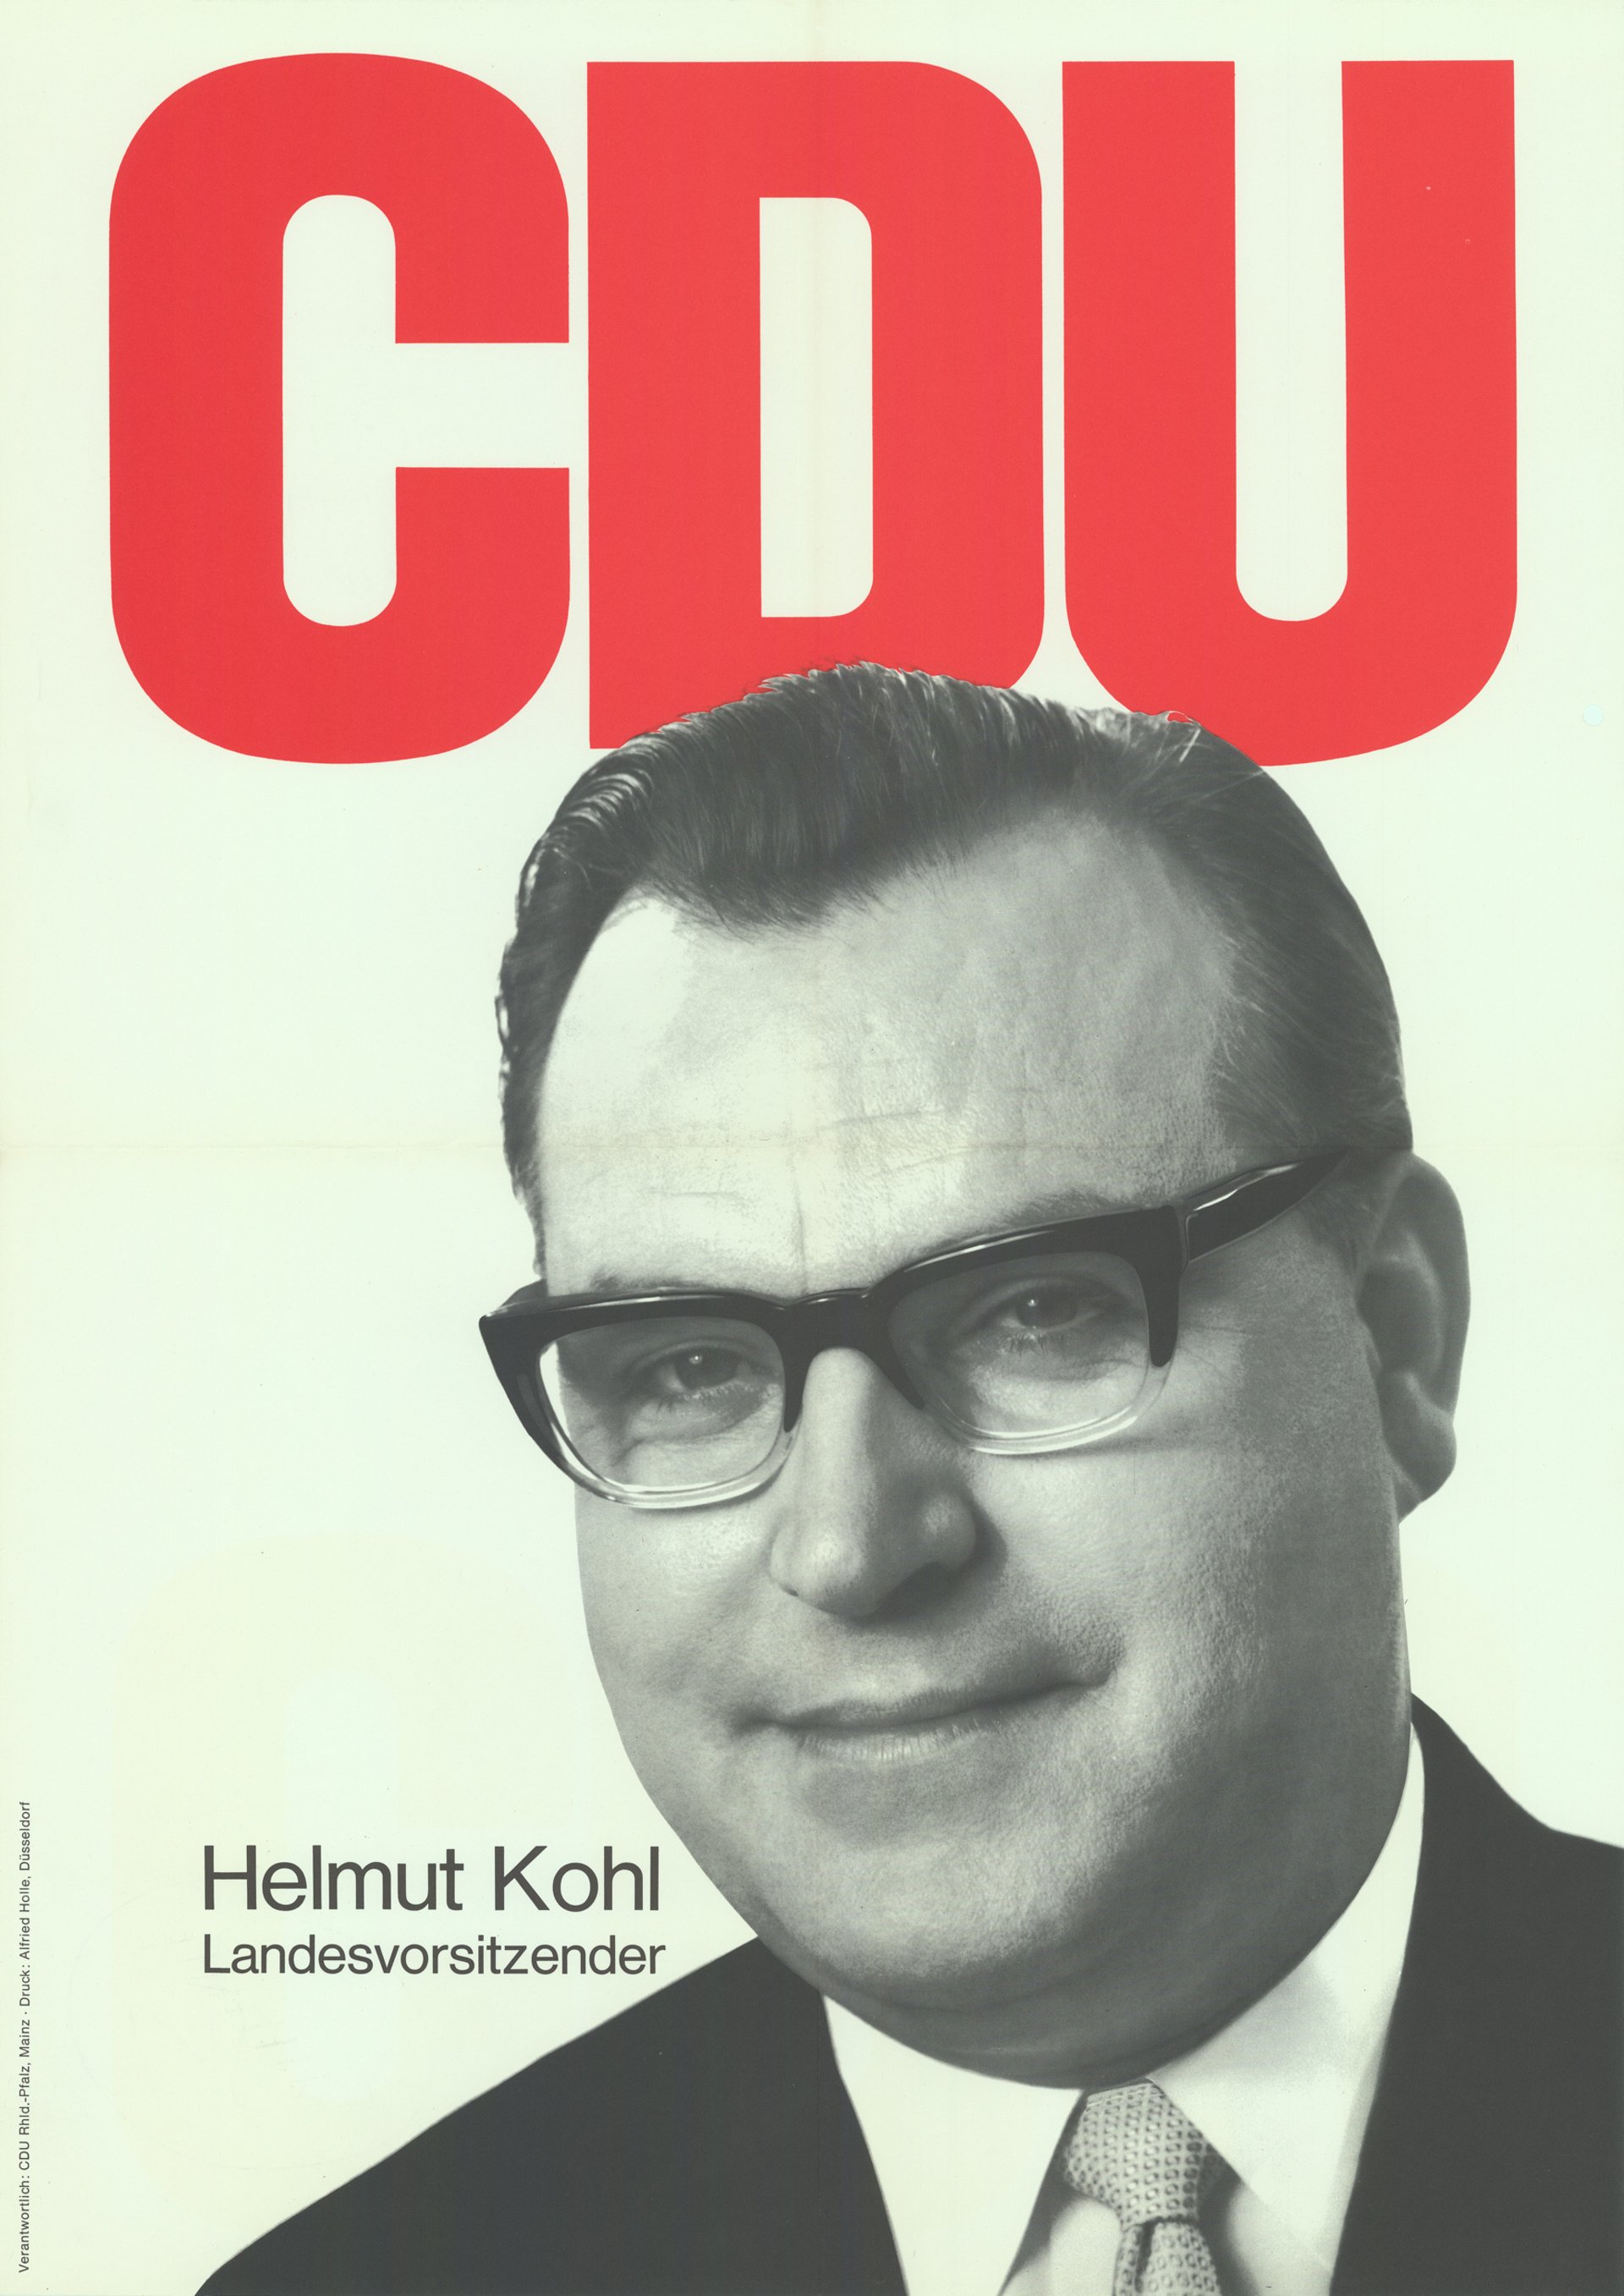 CDU-Plakat mit Kohl